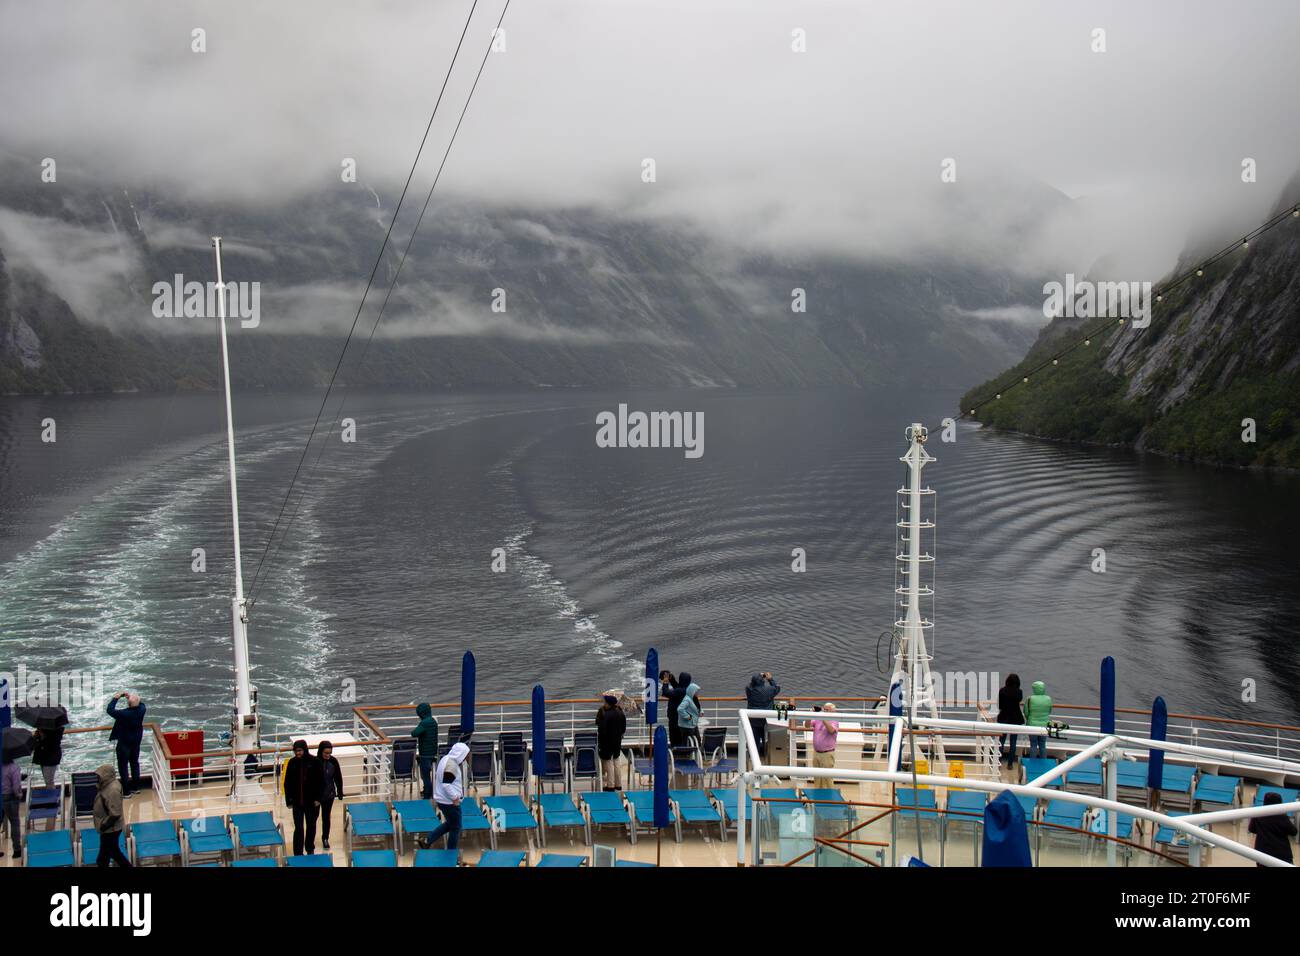 Fiordo de Geiranger envuelto en niebla. Personas de un crucero disfrutando y tomando fotografías, Noruega Stock Photo